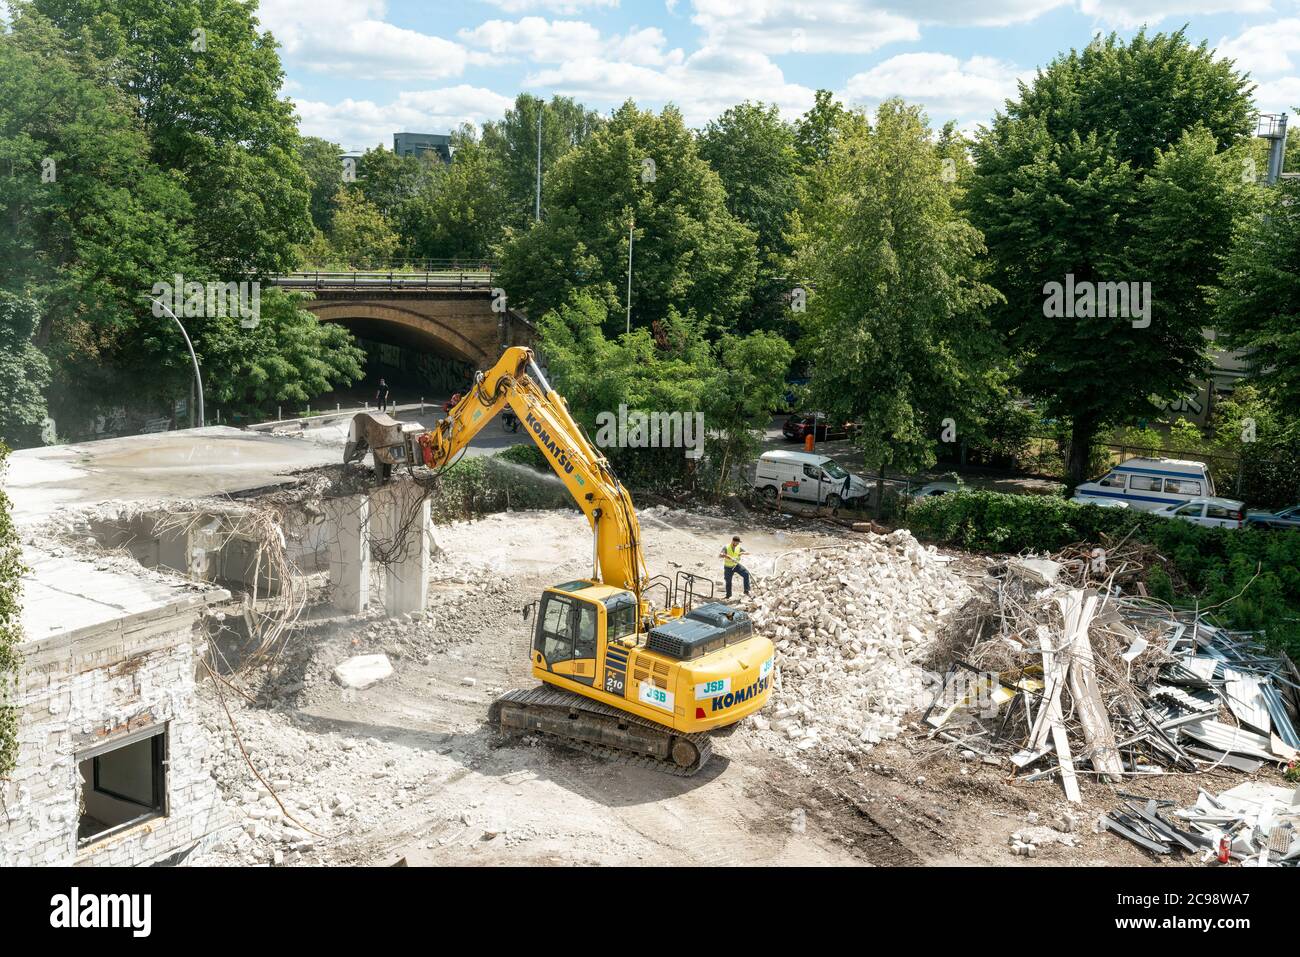 Berlin, Deutschland - 13. juli 2020: Eine Baustelle in Berlin mit einem gelben Bagger, der ein Haus abriss Stockfoto